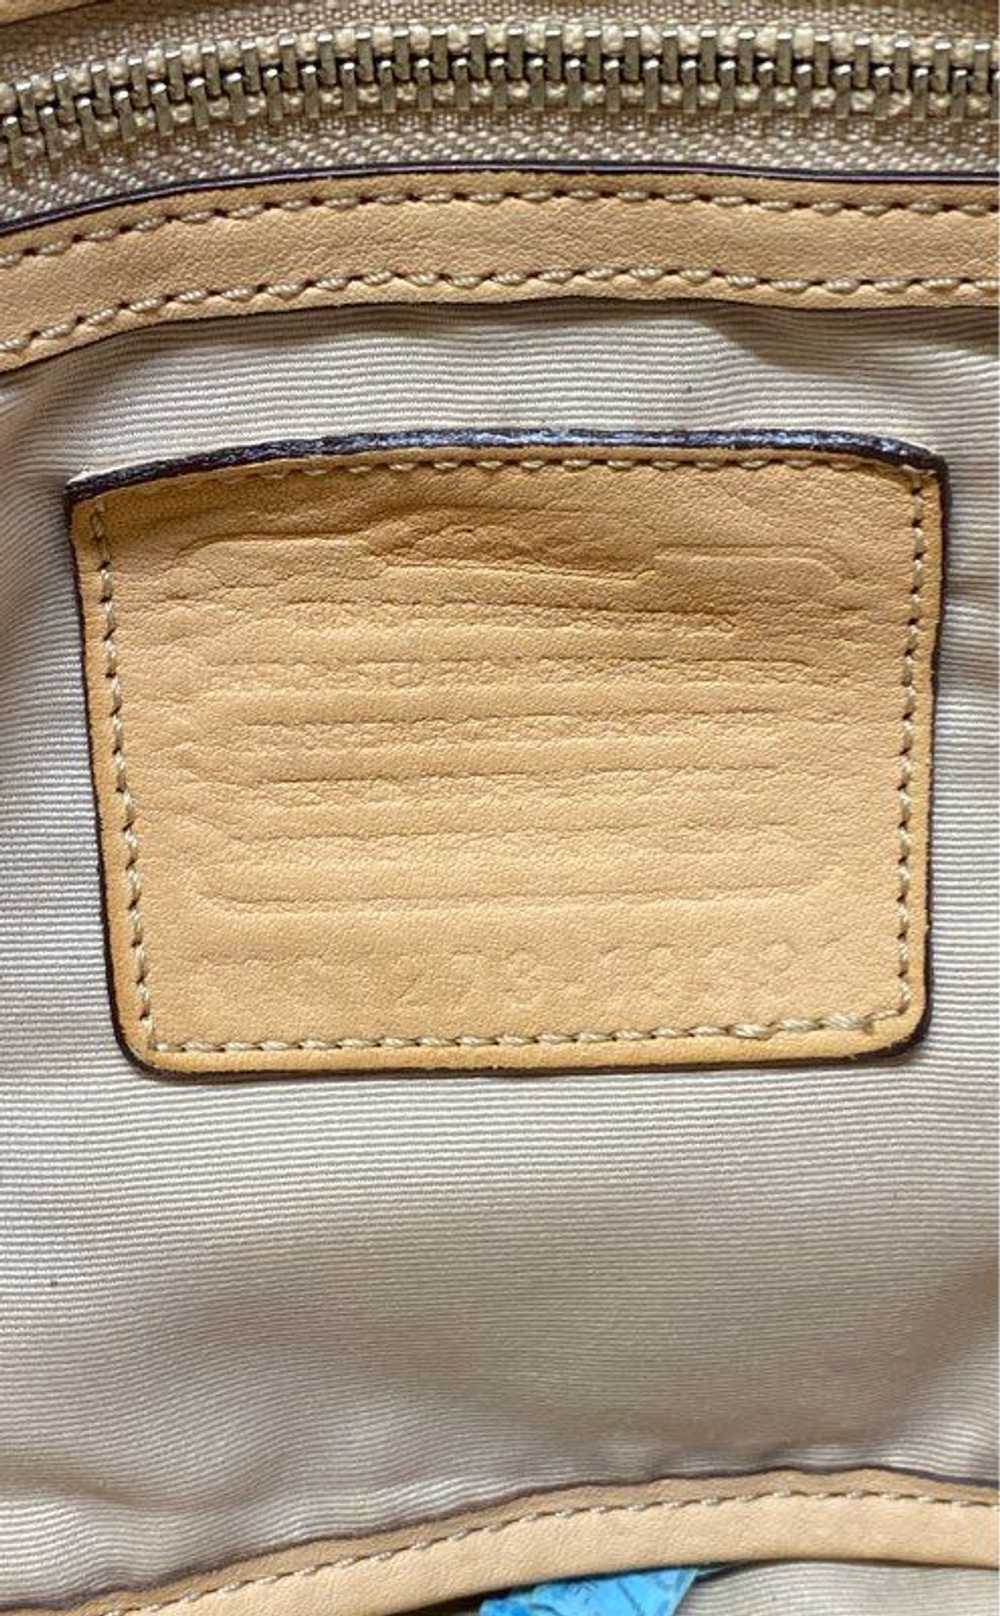 Coach Leather Shoulder Bag Tan - image 5